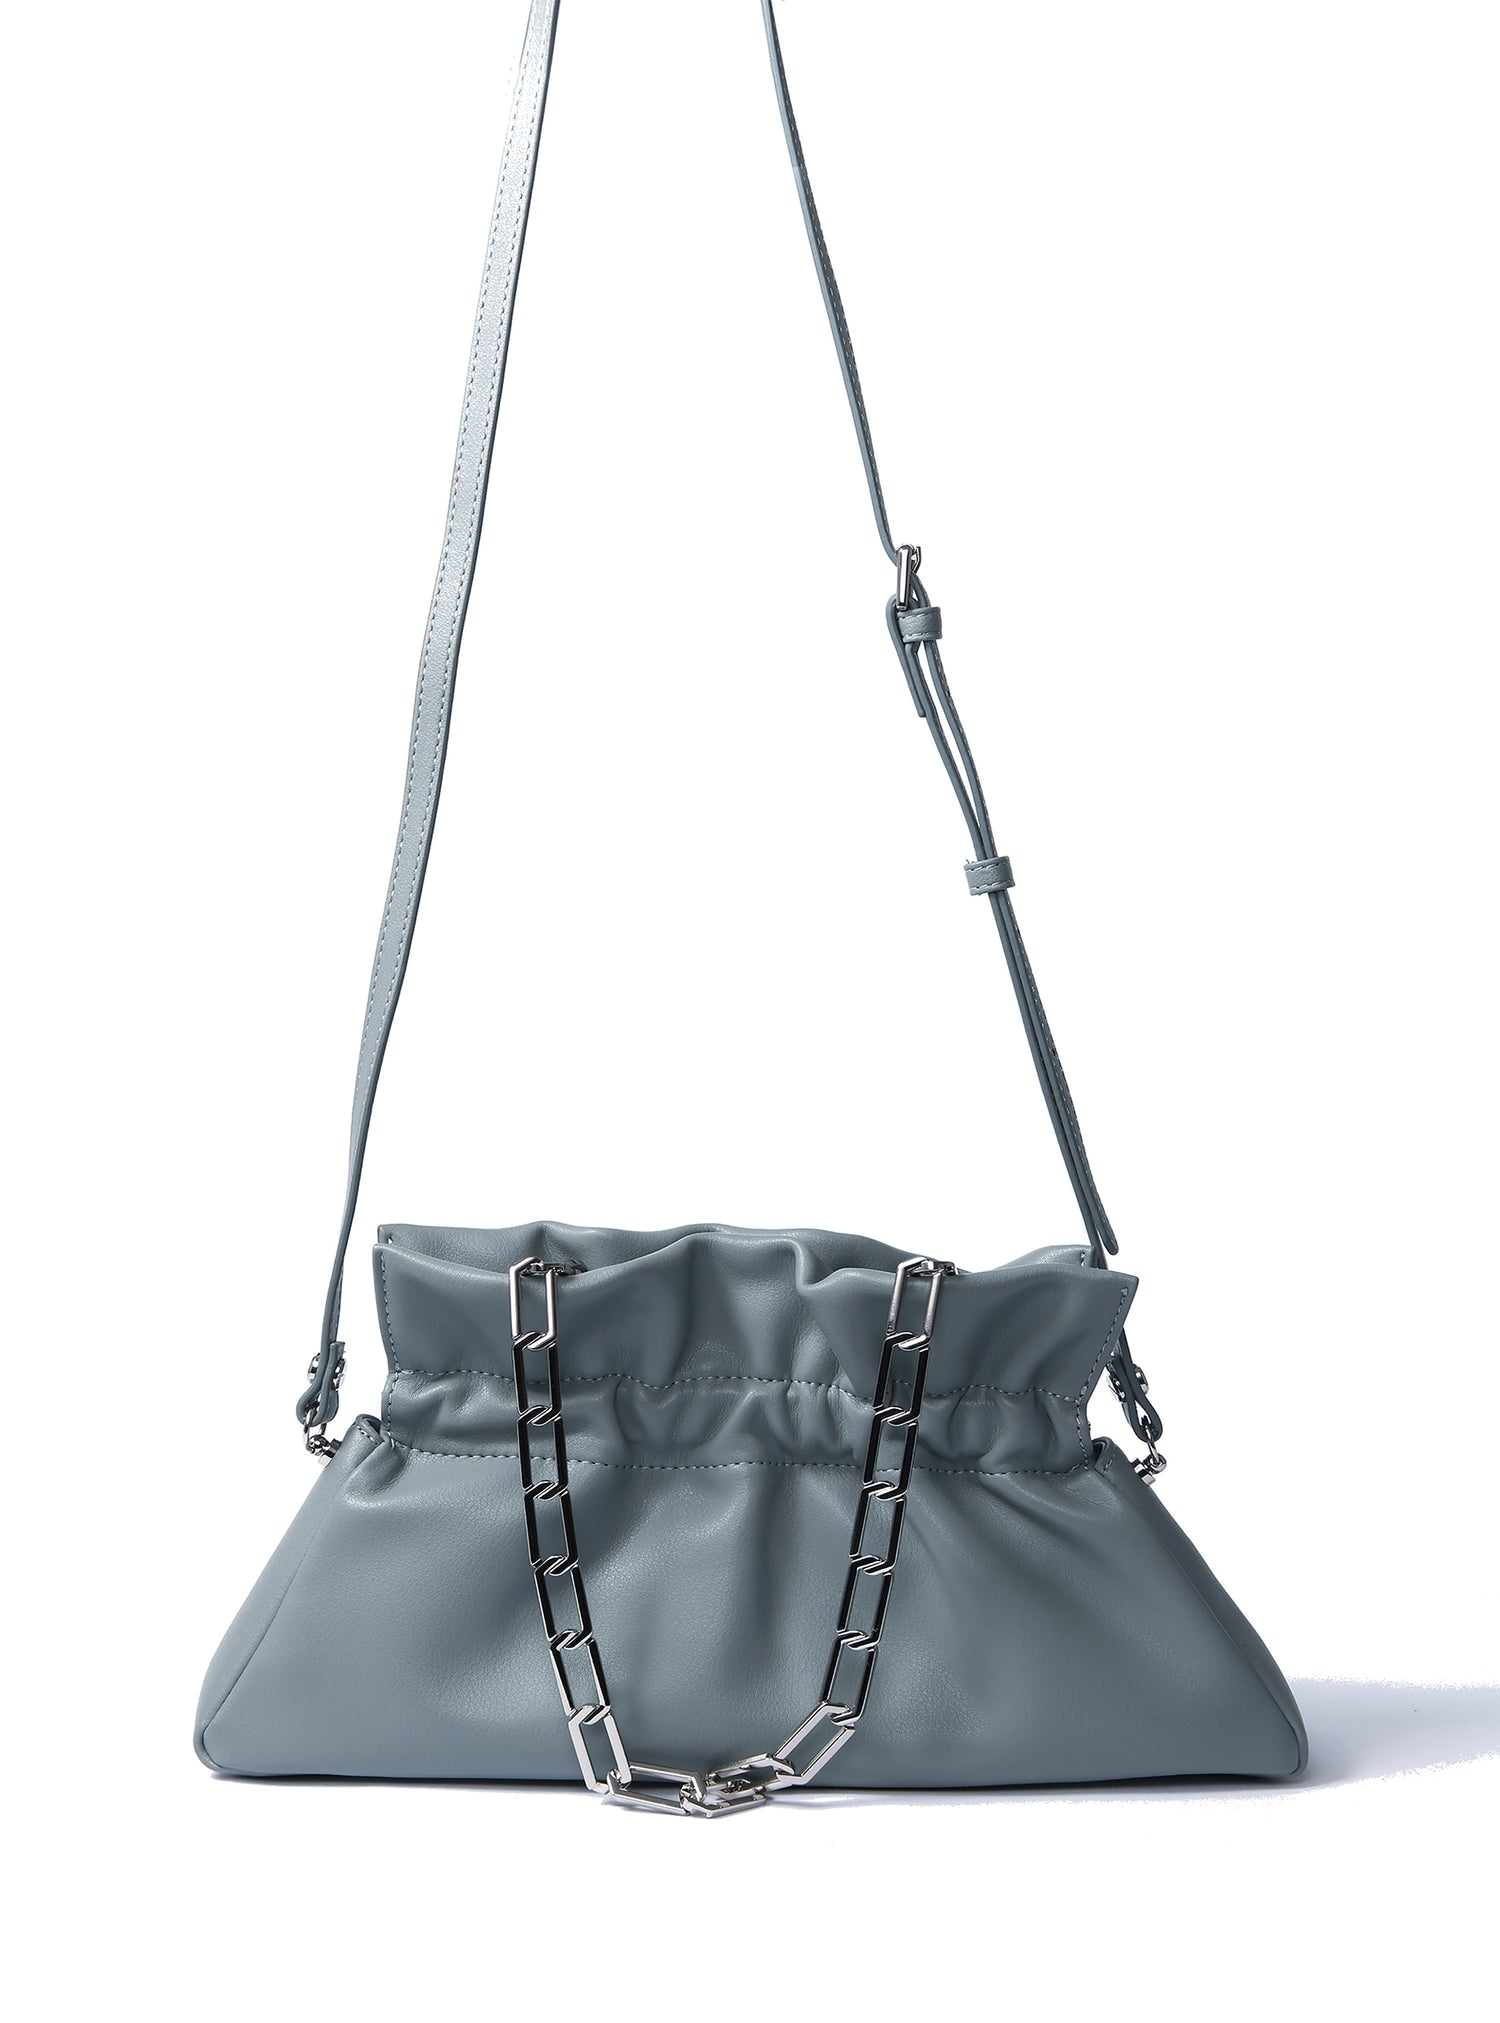 mila bag, mila handbag, mila should bag, smooth leather bag